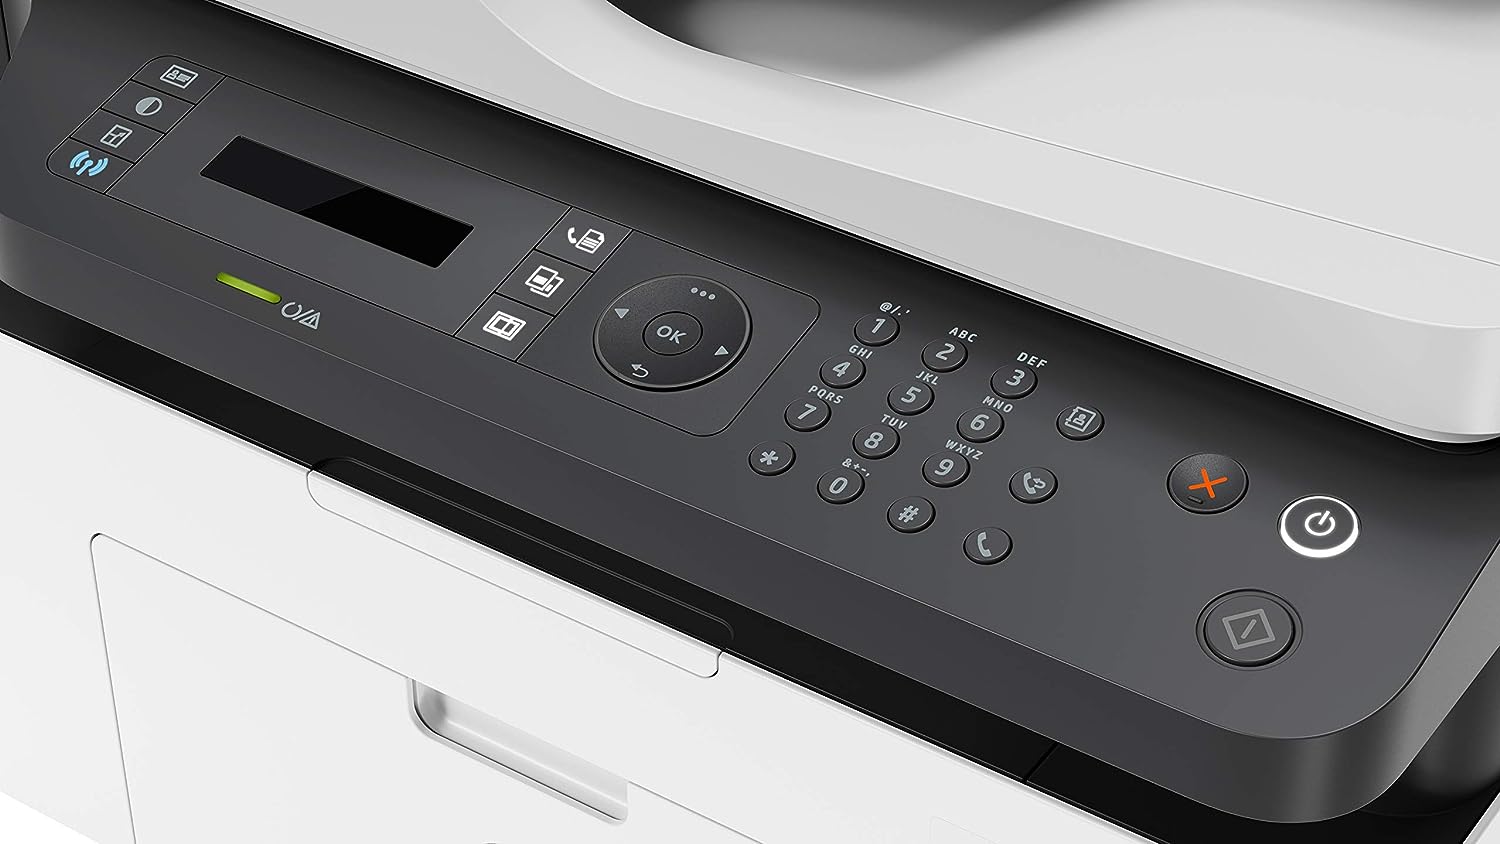 HP Laser 137fnw (3-in-1) - Laser- Multifunktionsdrucker (Laserdrucker, Kopierer, Scanner, Fax, WLAN)